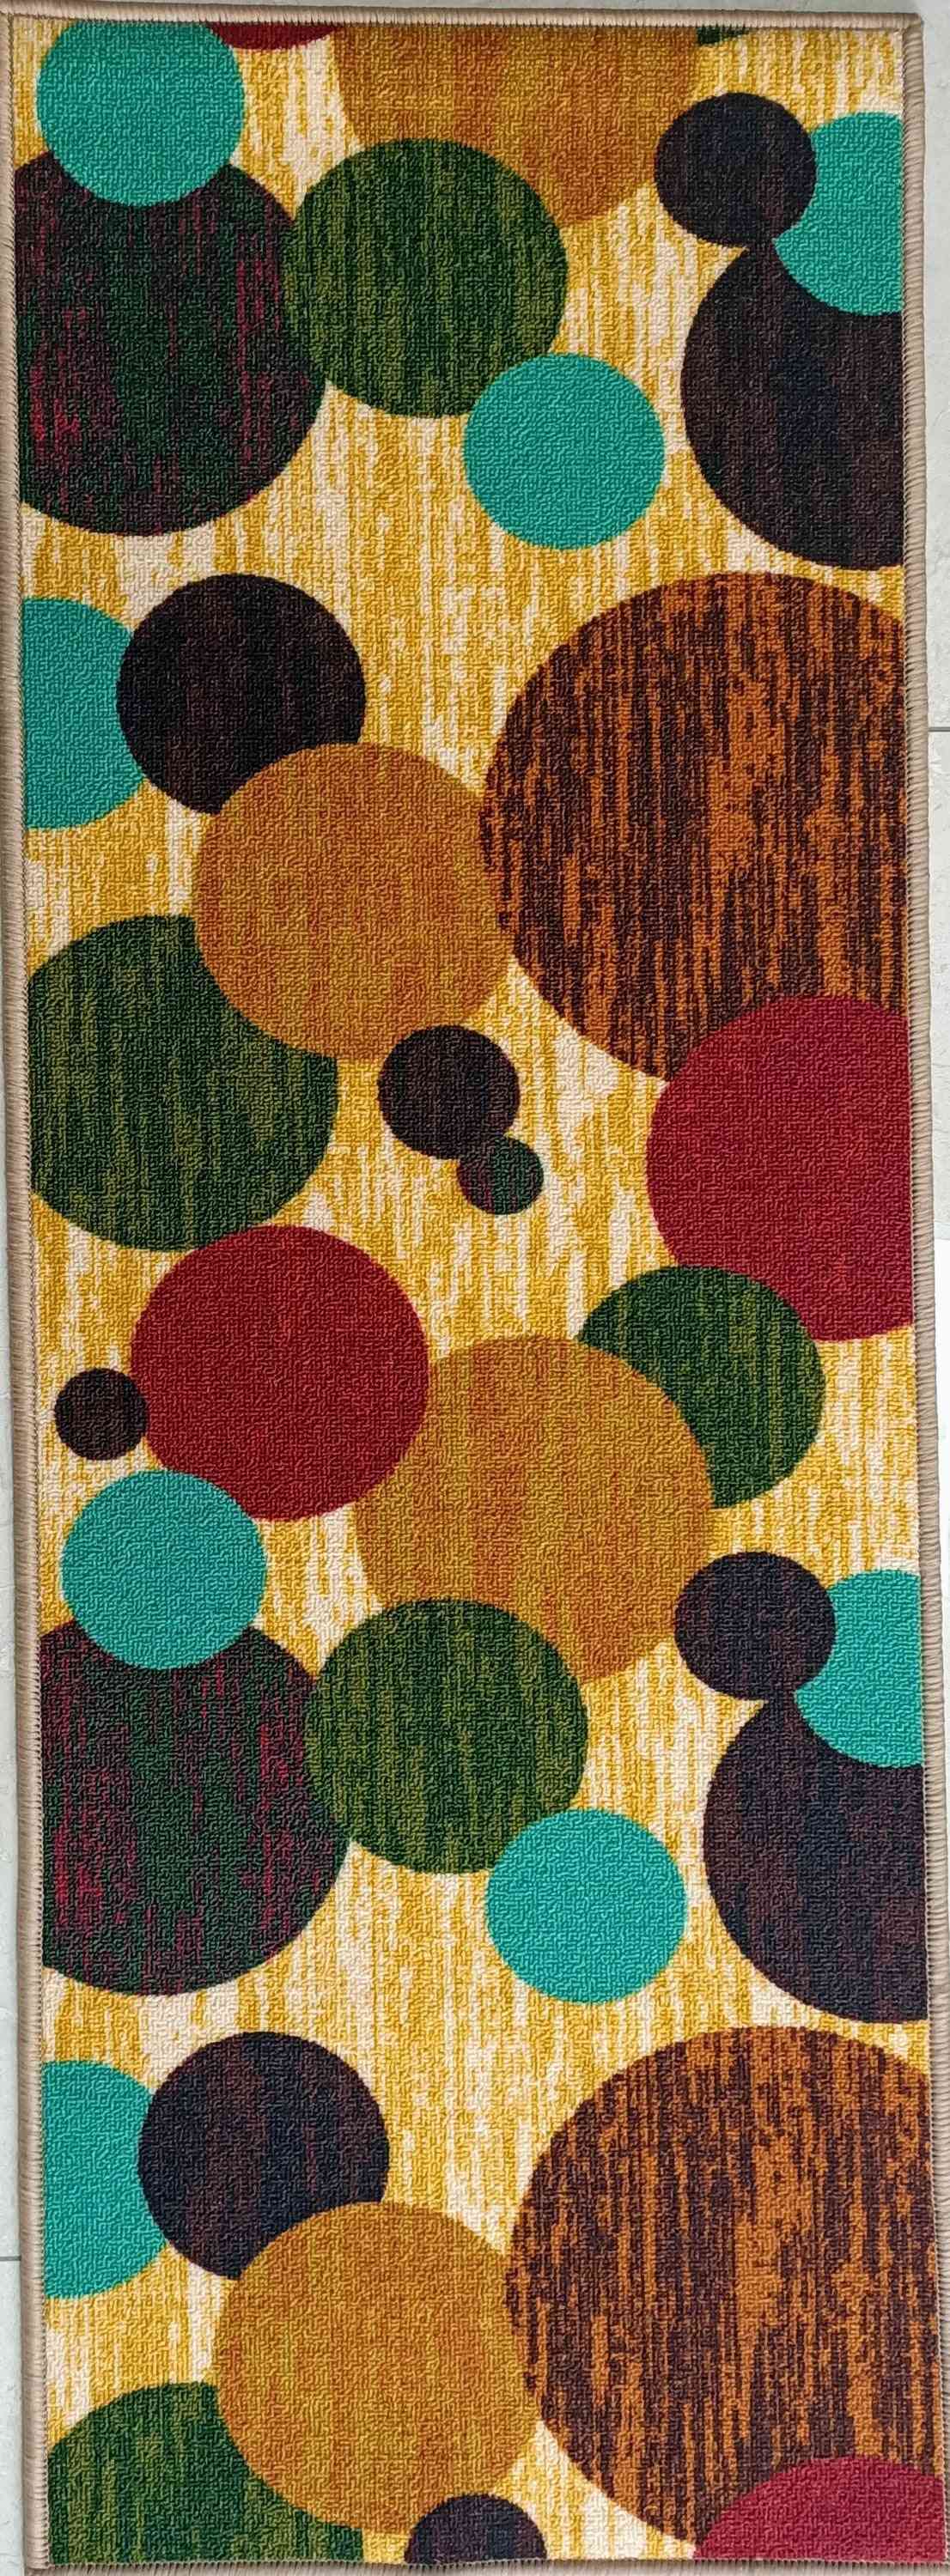 Bublinkový polyester, protiskluzový malý koberec / koberec